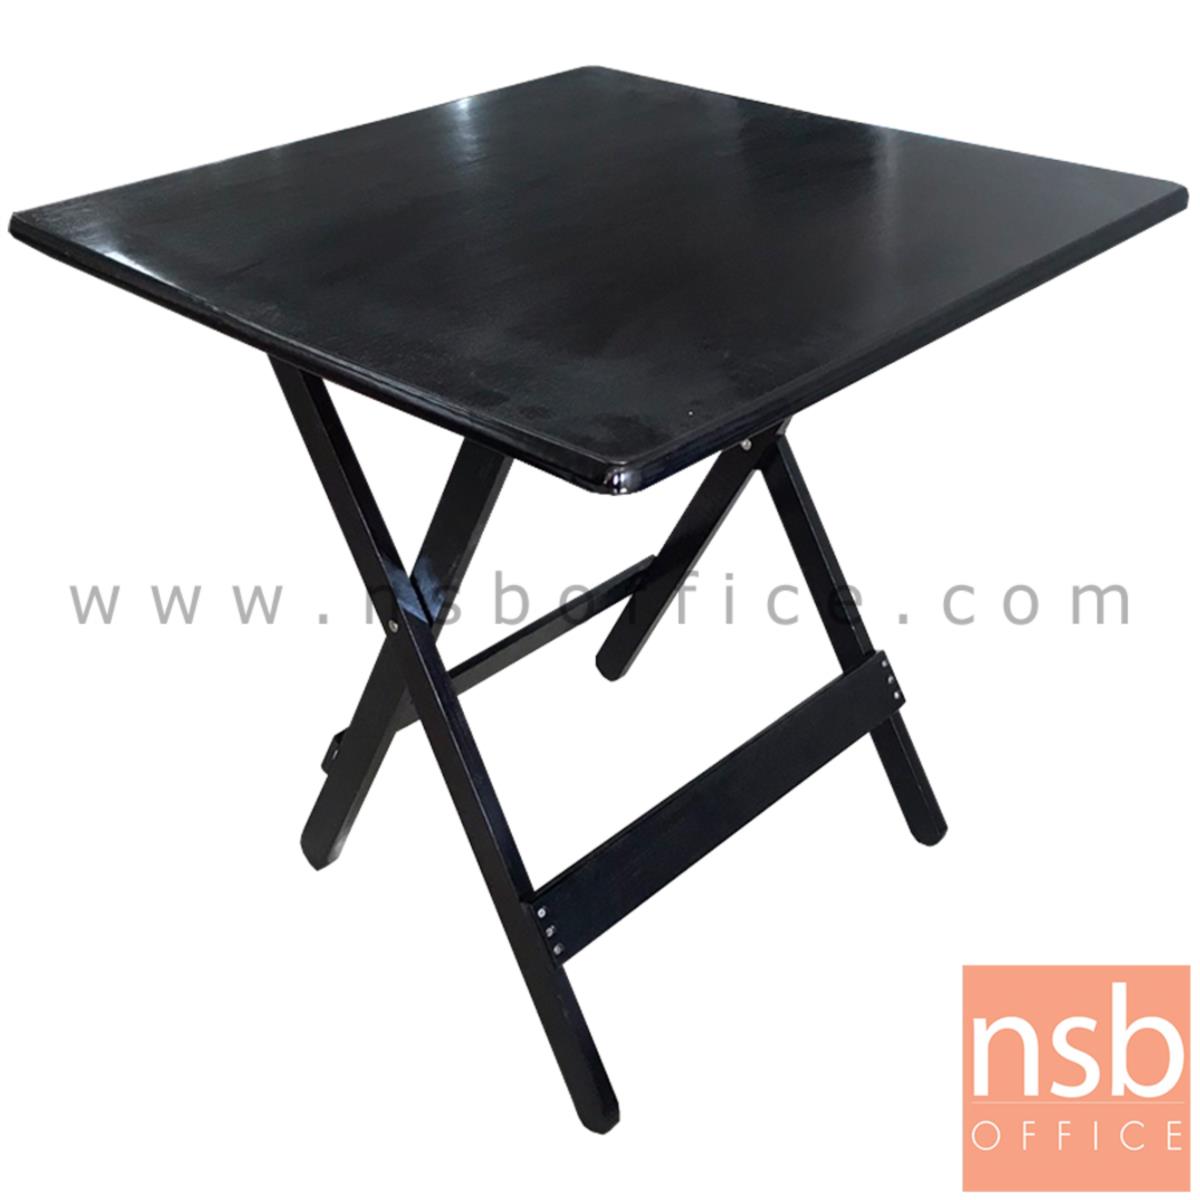 L08A067:โต๊ะพับไม้  ขนาด 75W*76H cm. สีโอ๊ค